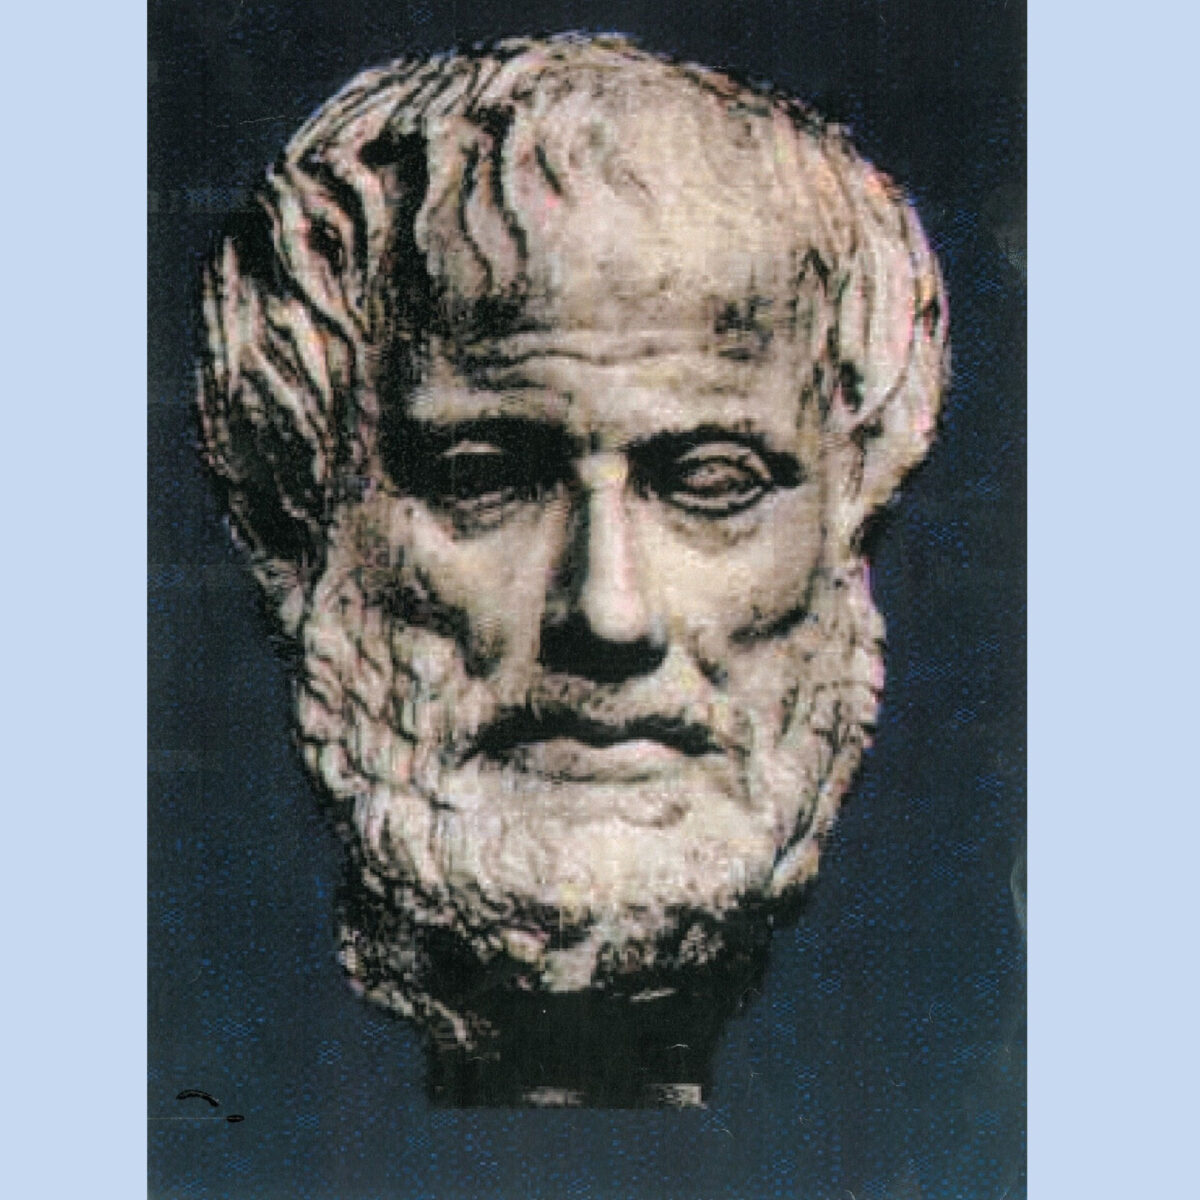 Eικ. 22. Αριστερά: Αριστοτέλης, μαρμάρινο αντίγραφο του αυθεντικού έργου. Ο αριστερός του οφθαλμός παρουσιάζεται διογκωμένος. Μουσείο Ιστορίας της Τέχνης, Βιέννη.